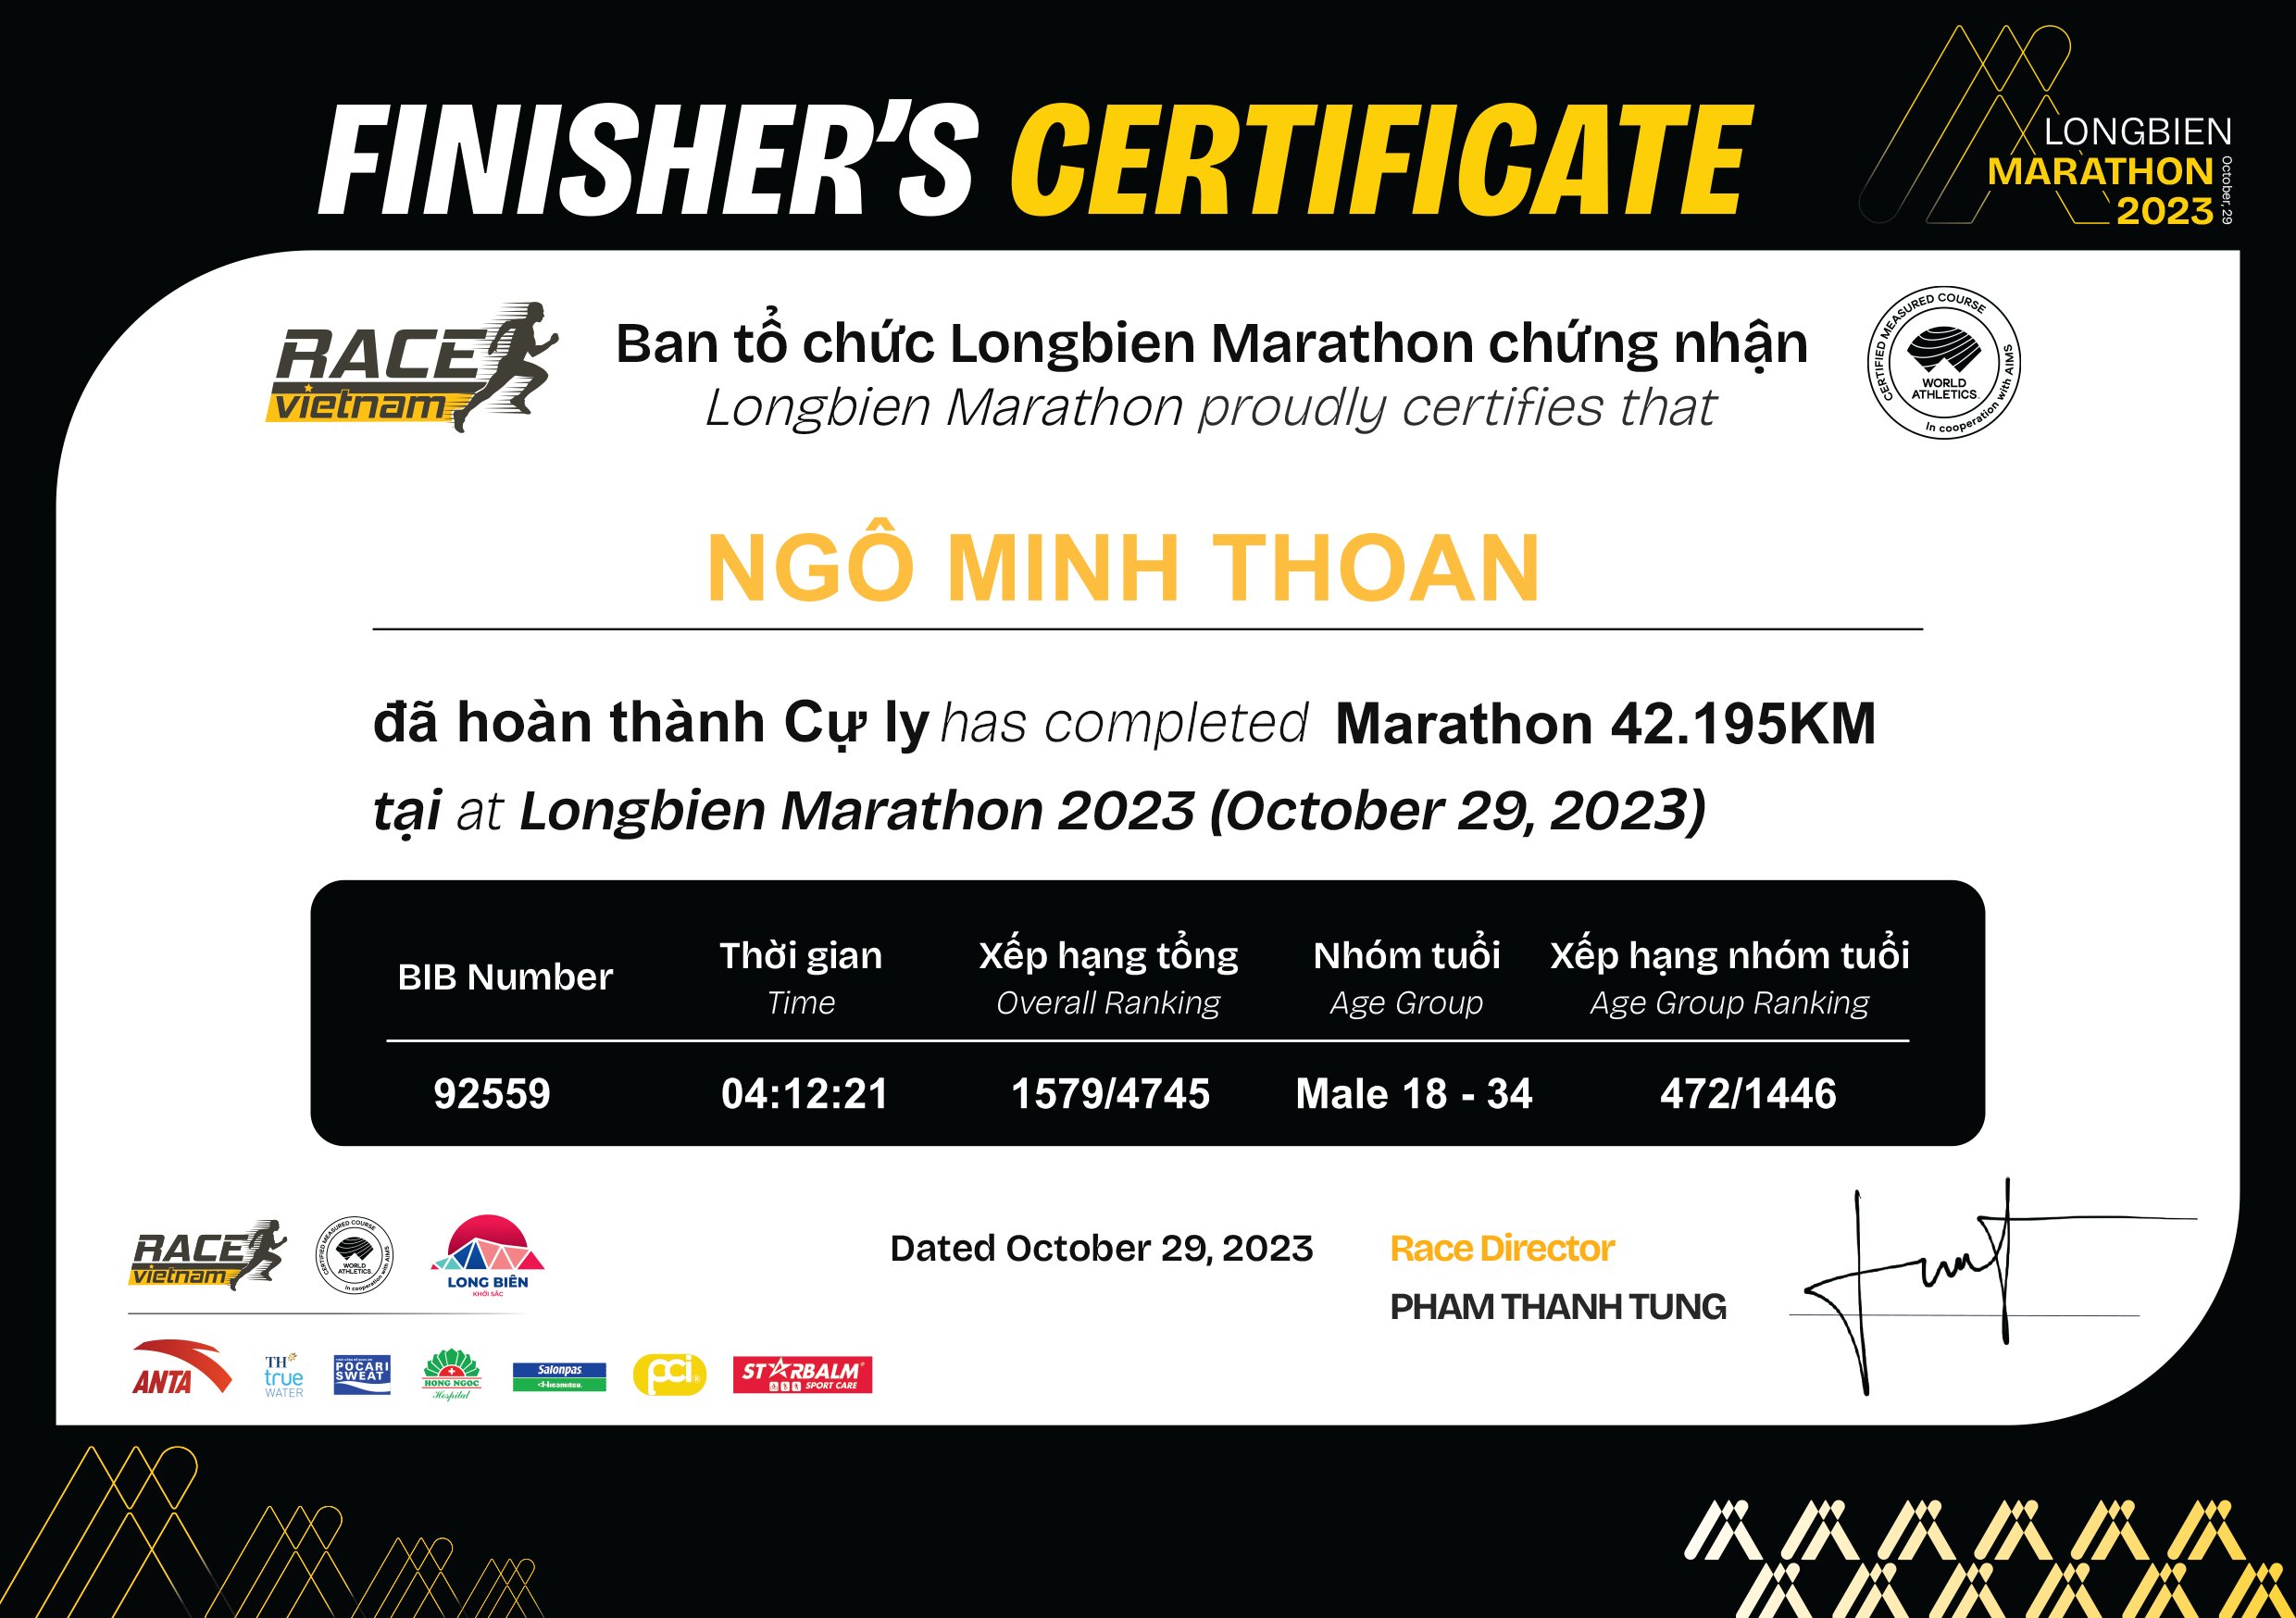 92559 - Ngô Minh Thoan